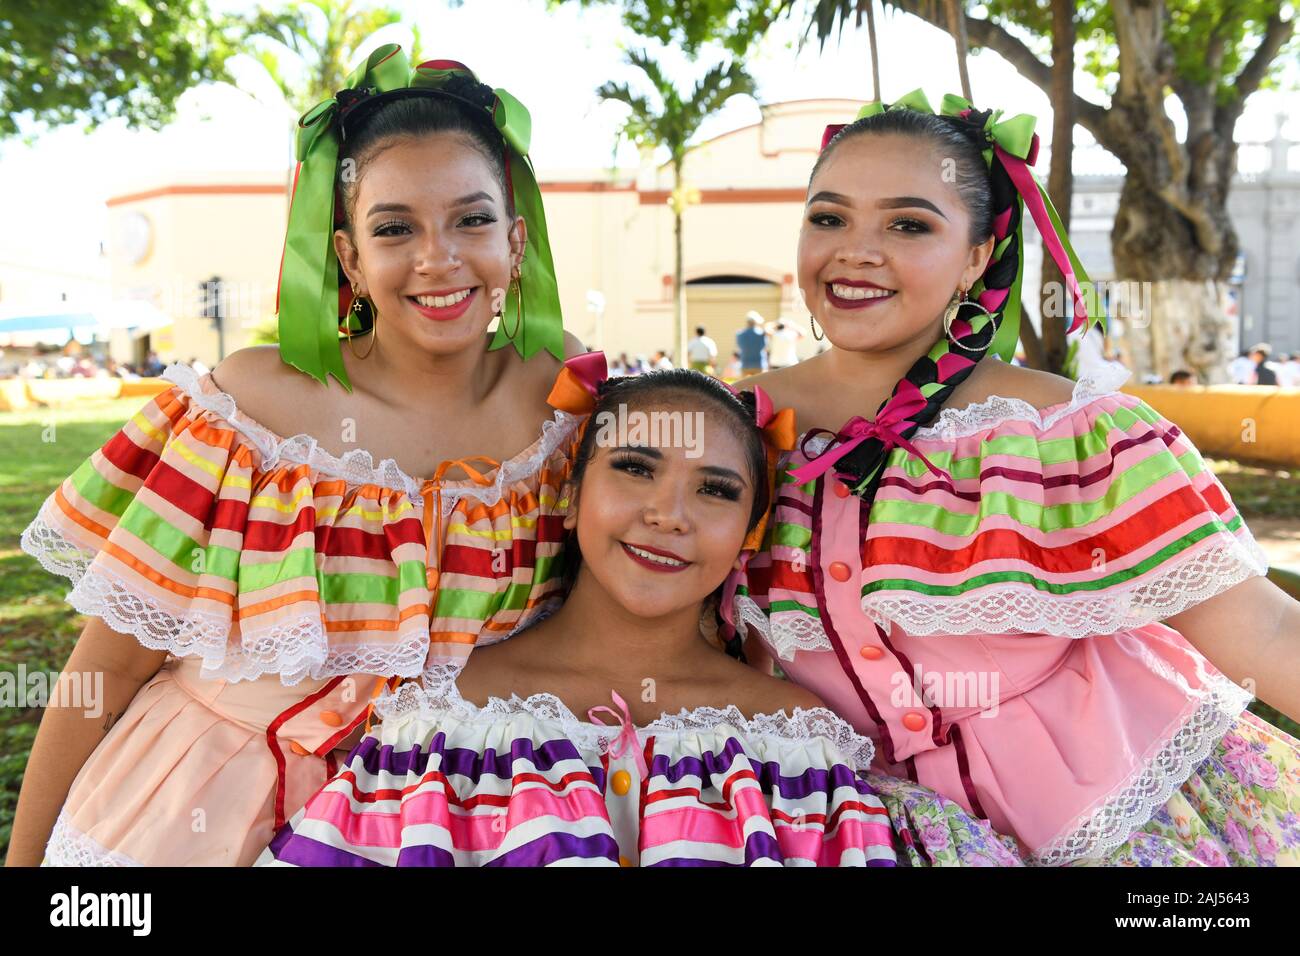 Las mujeres mexicanas en trajes tradicionales, Mérida, Yucatán Foto de stock